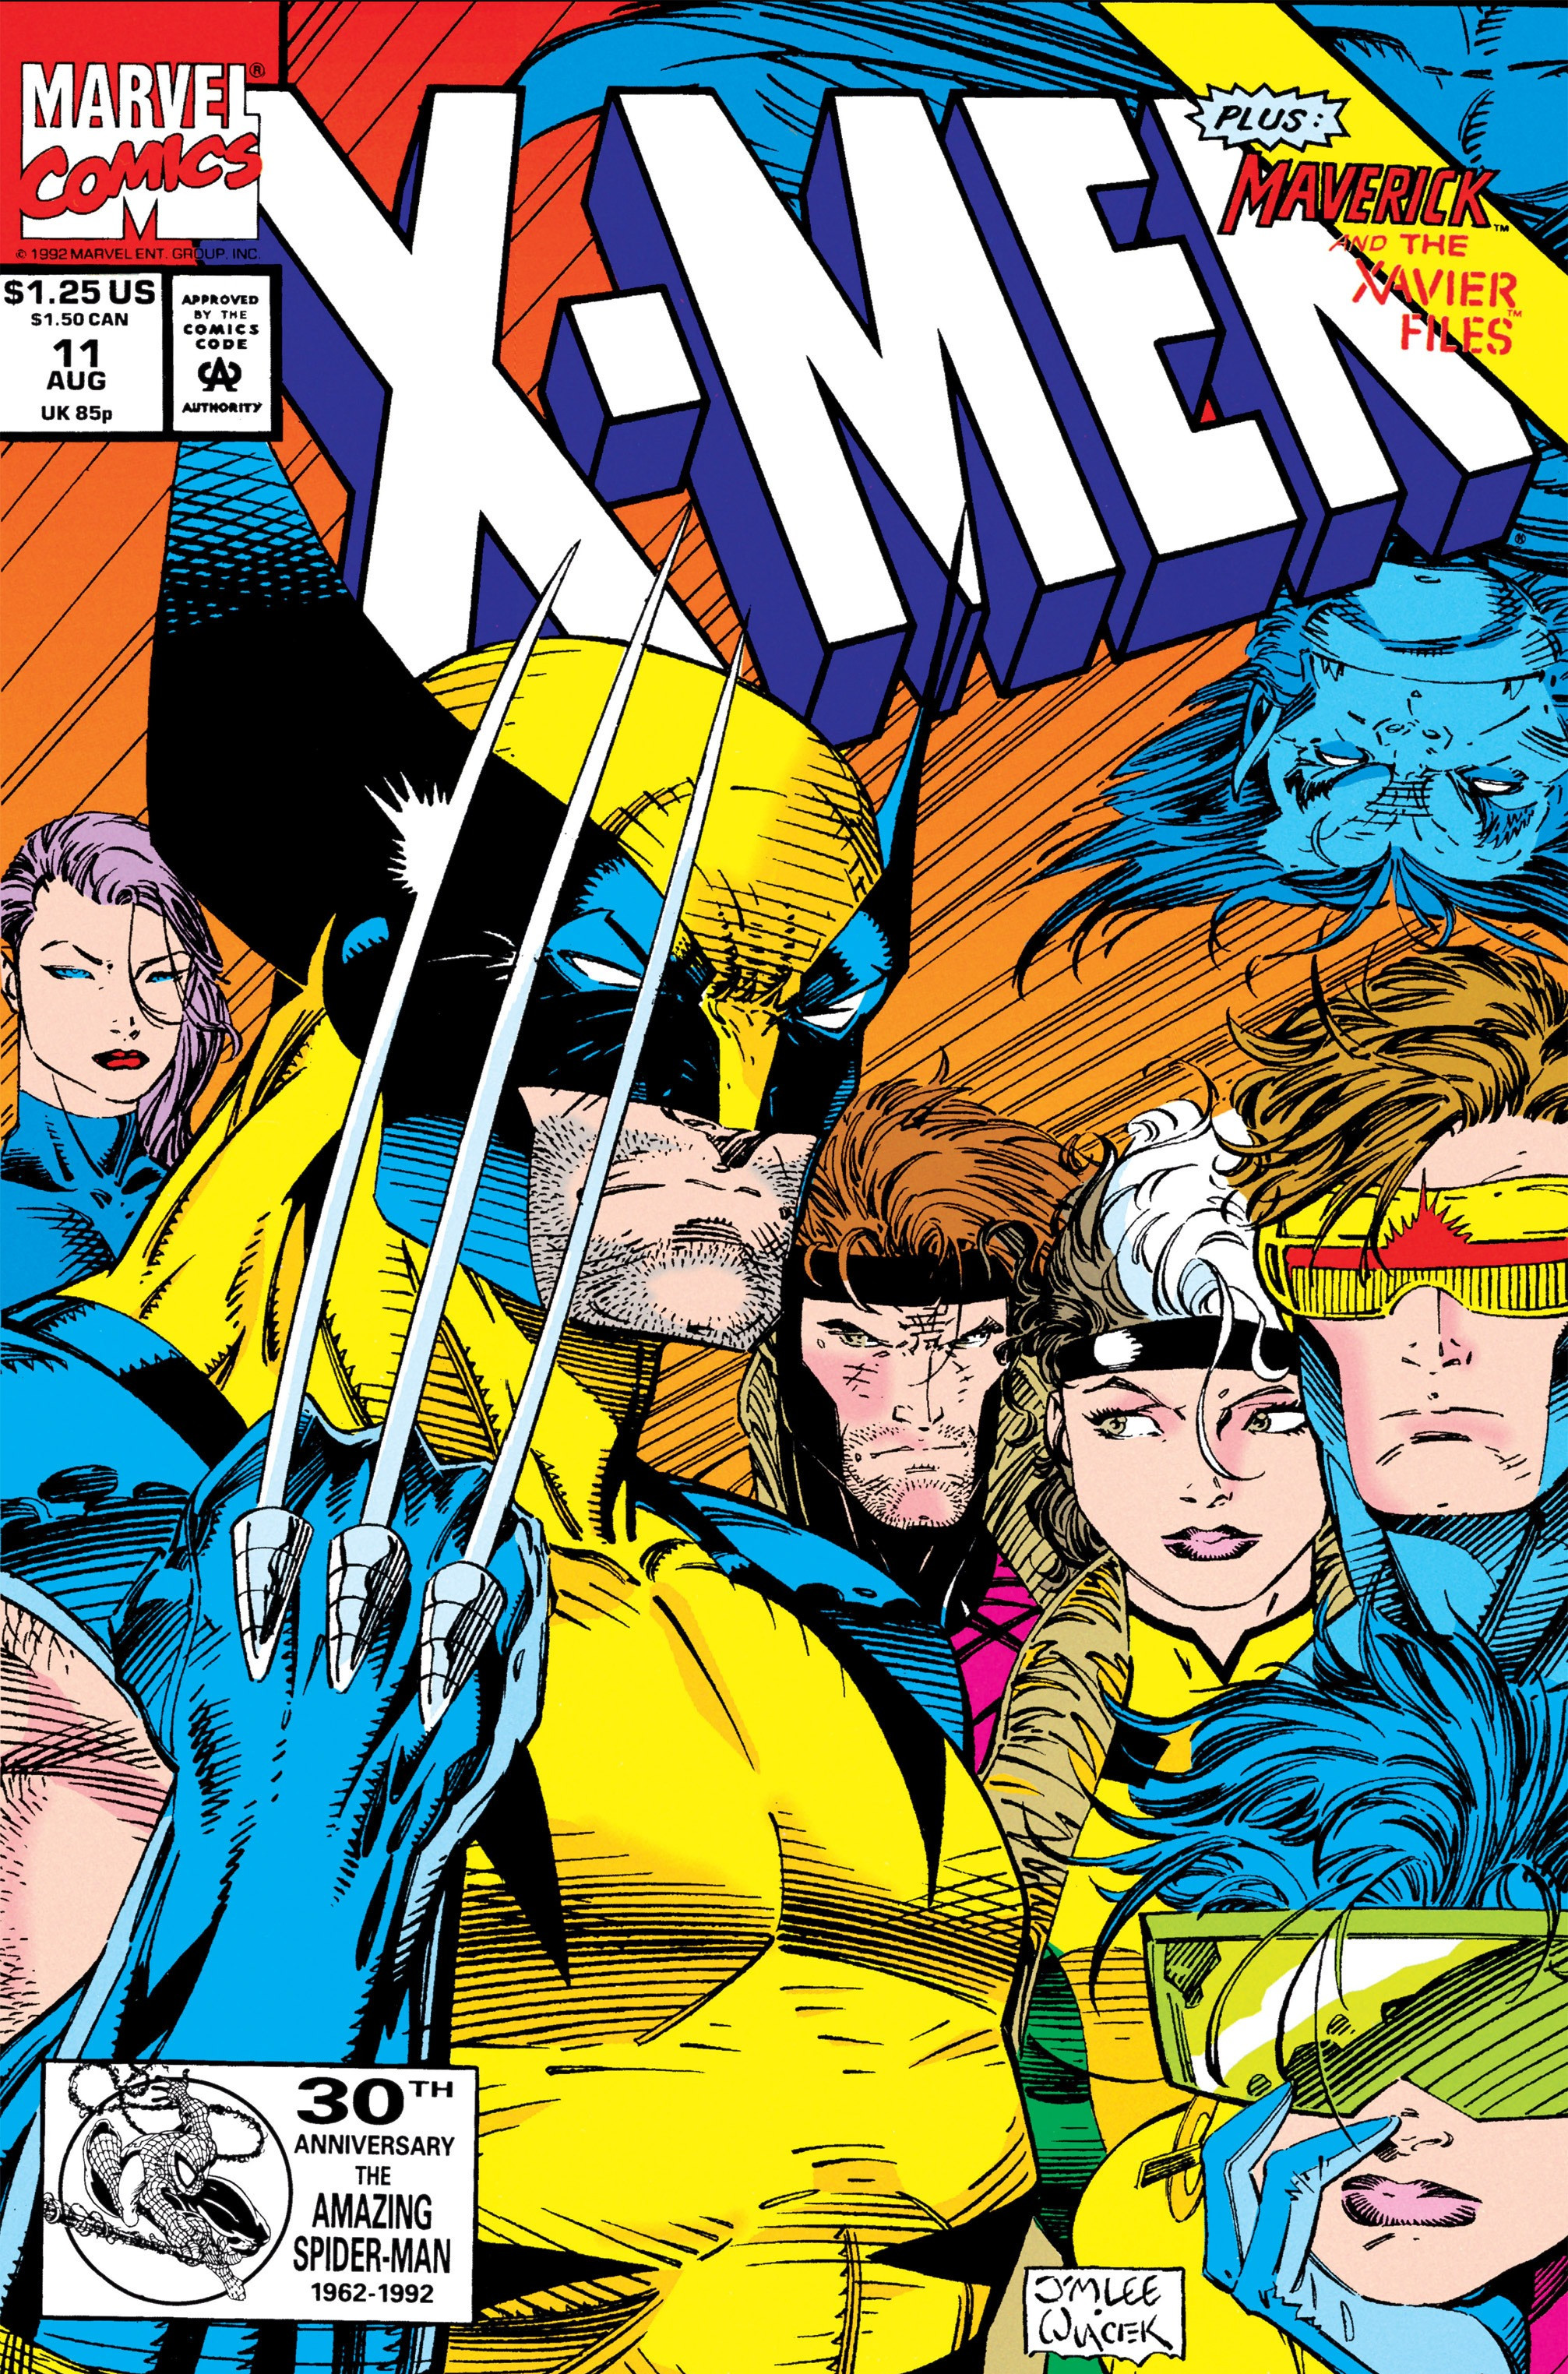 Full Movie X-Men: Days of Future Past Full Movie